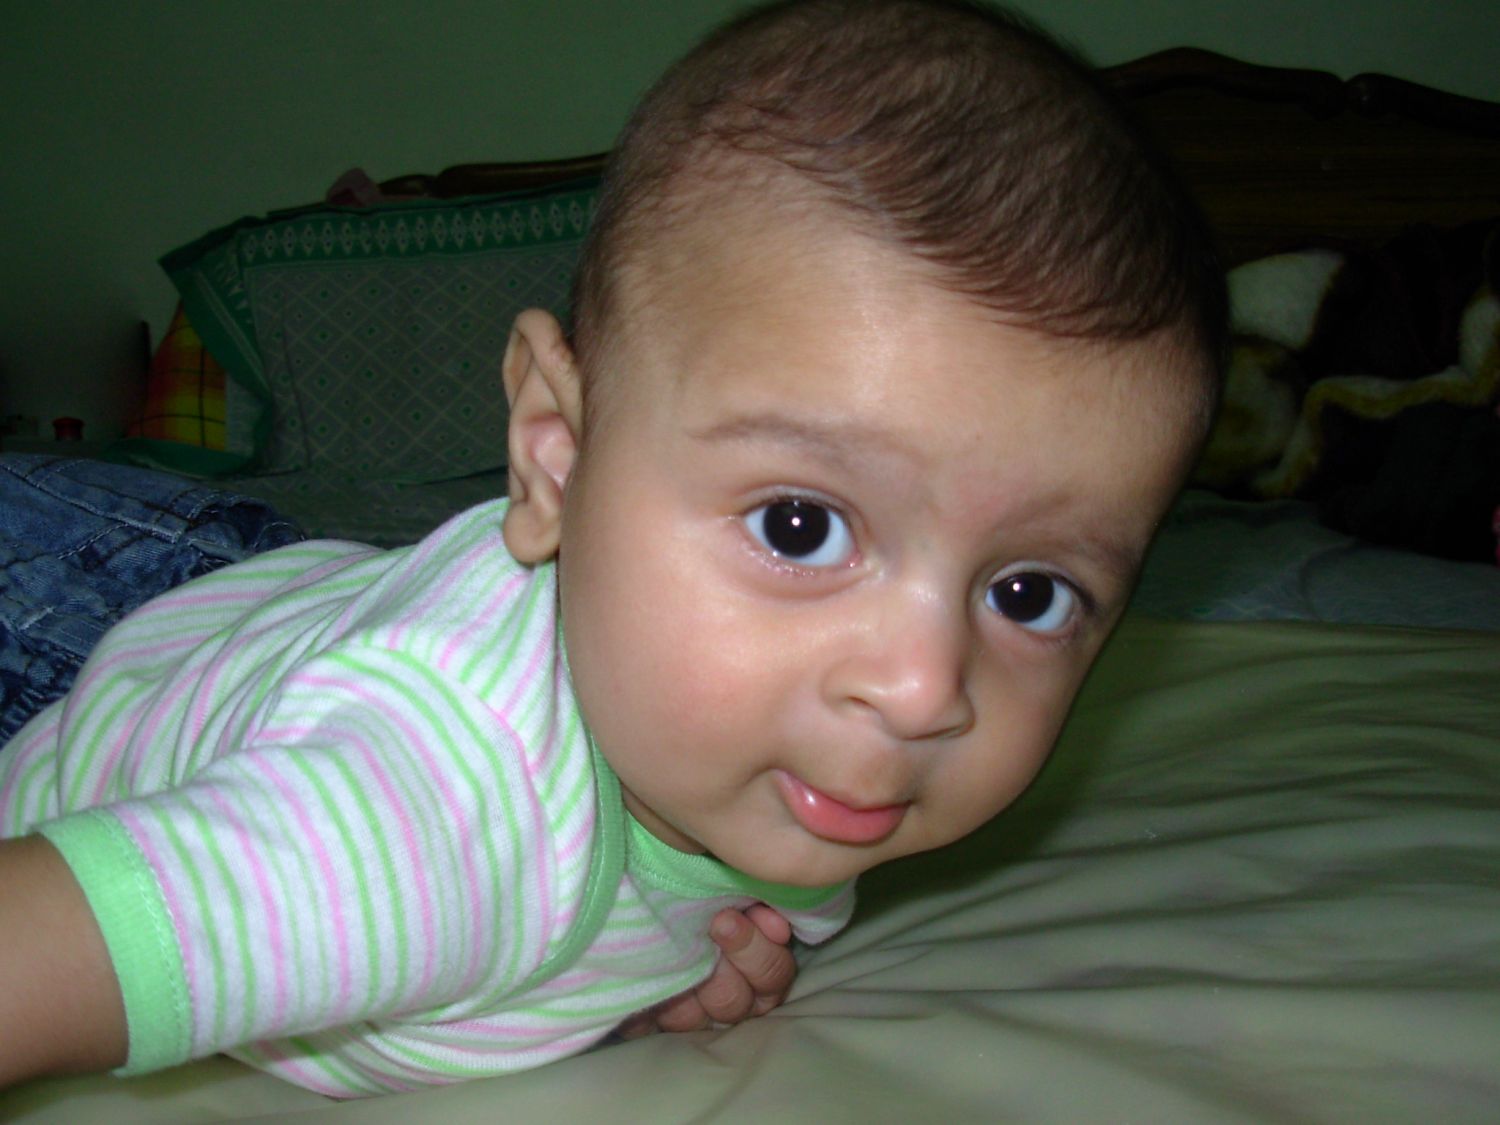 Child Safety blog- Tummy Time Baby